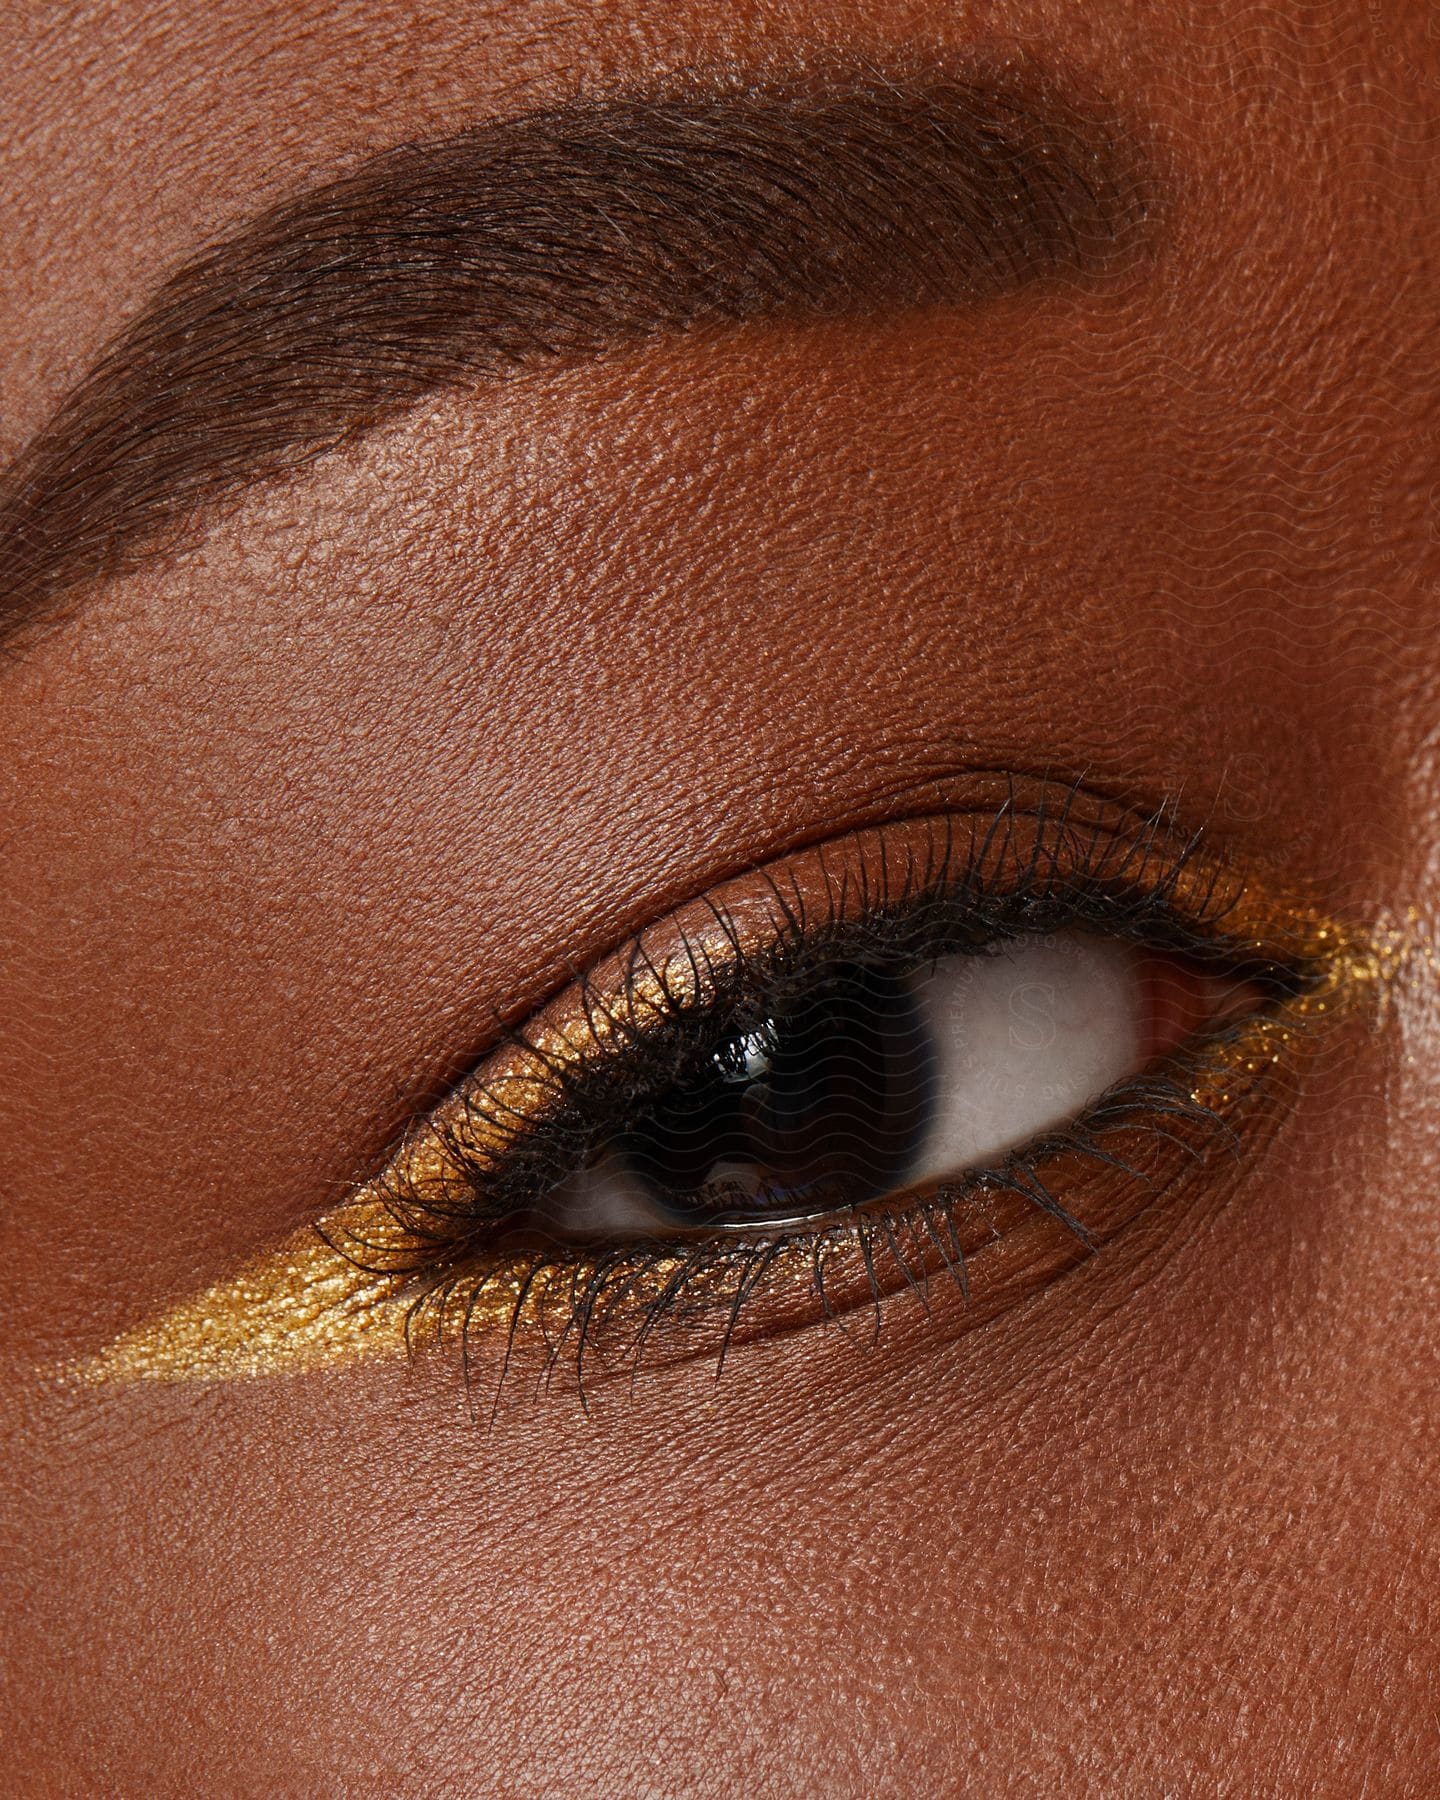 A black models eye with gold eyeliner